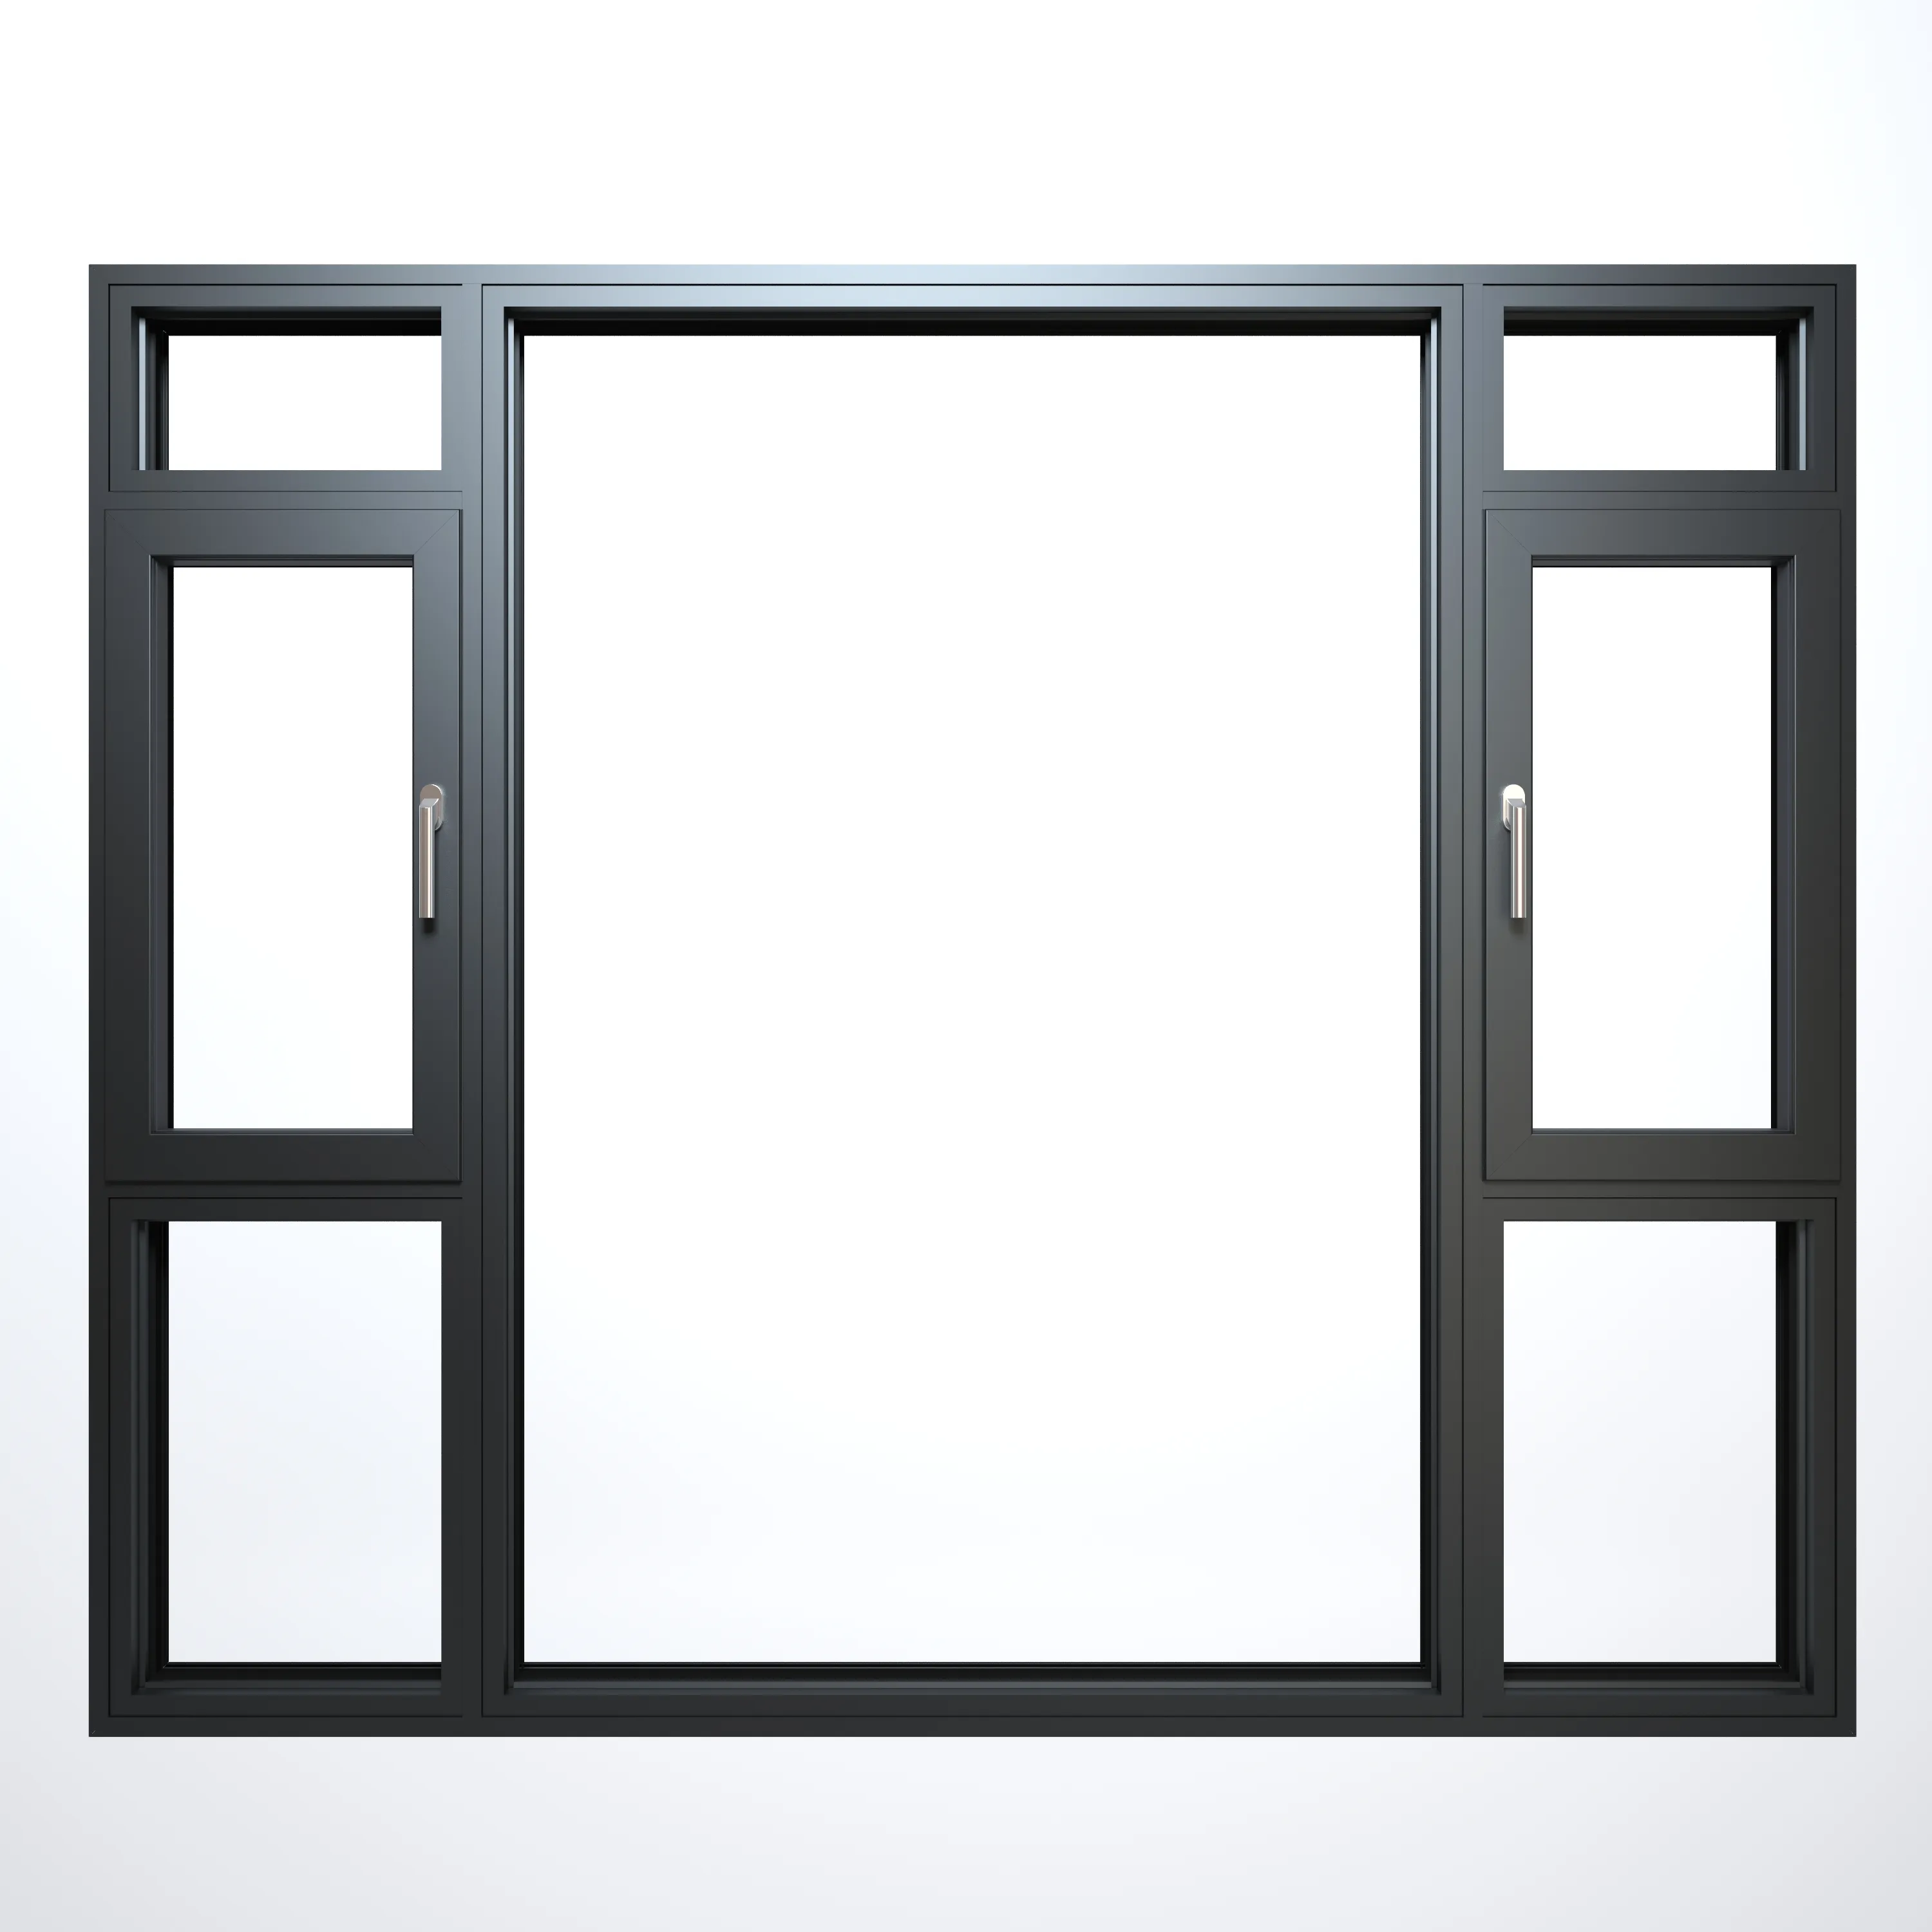 Американский стиль, алюминиевые фиксированные окна, изолированные и изолированные стеклянные окна, алюминиевые рамки, двери и окна из алюминия